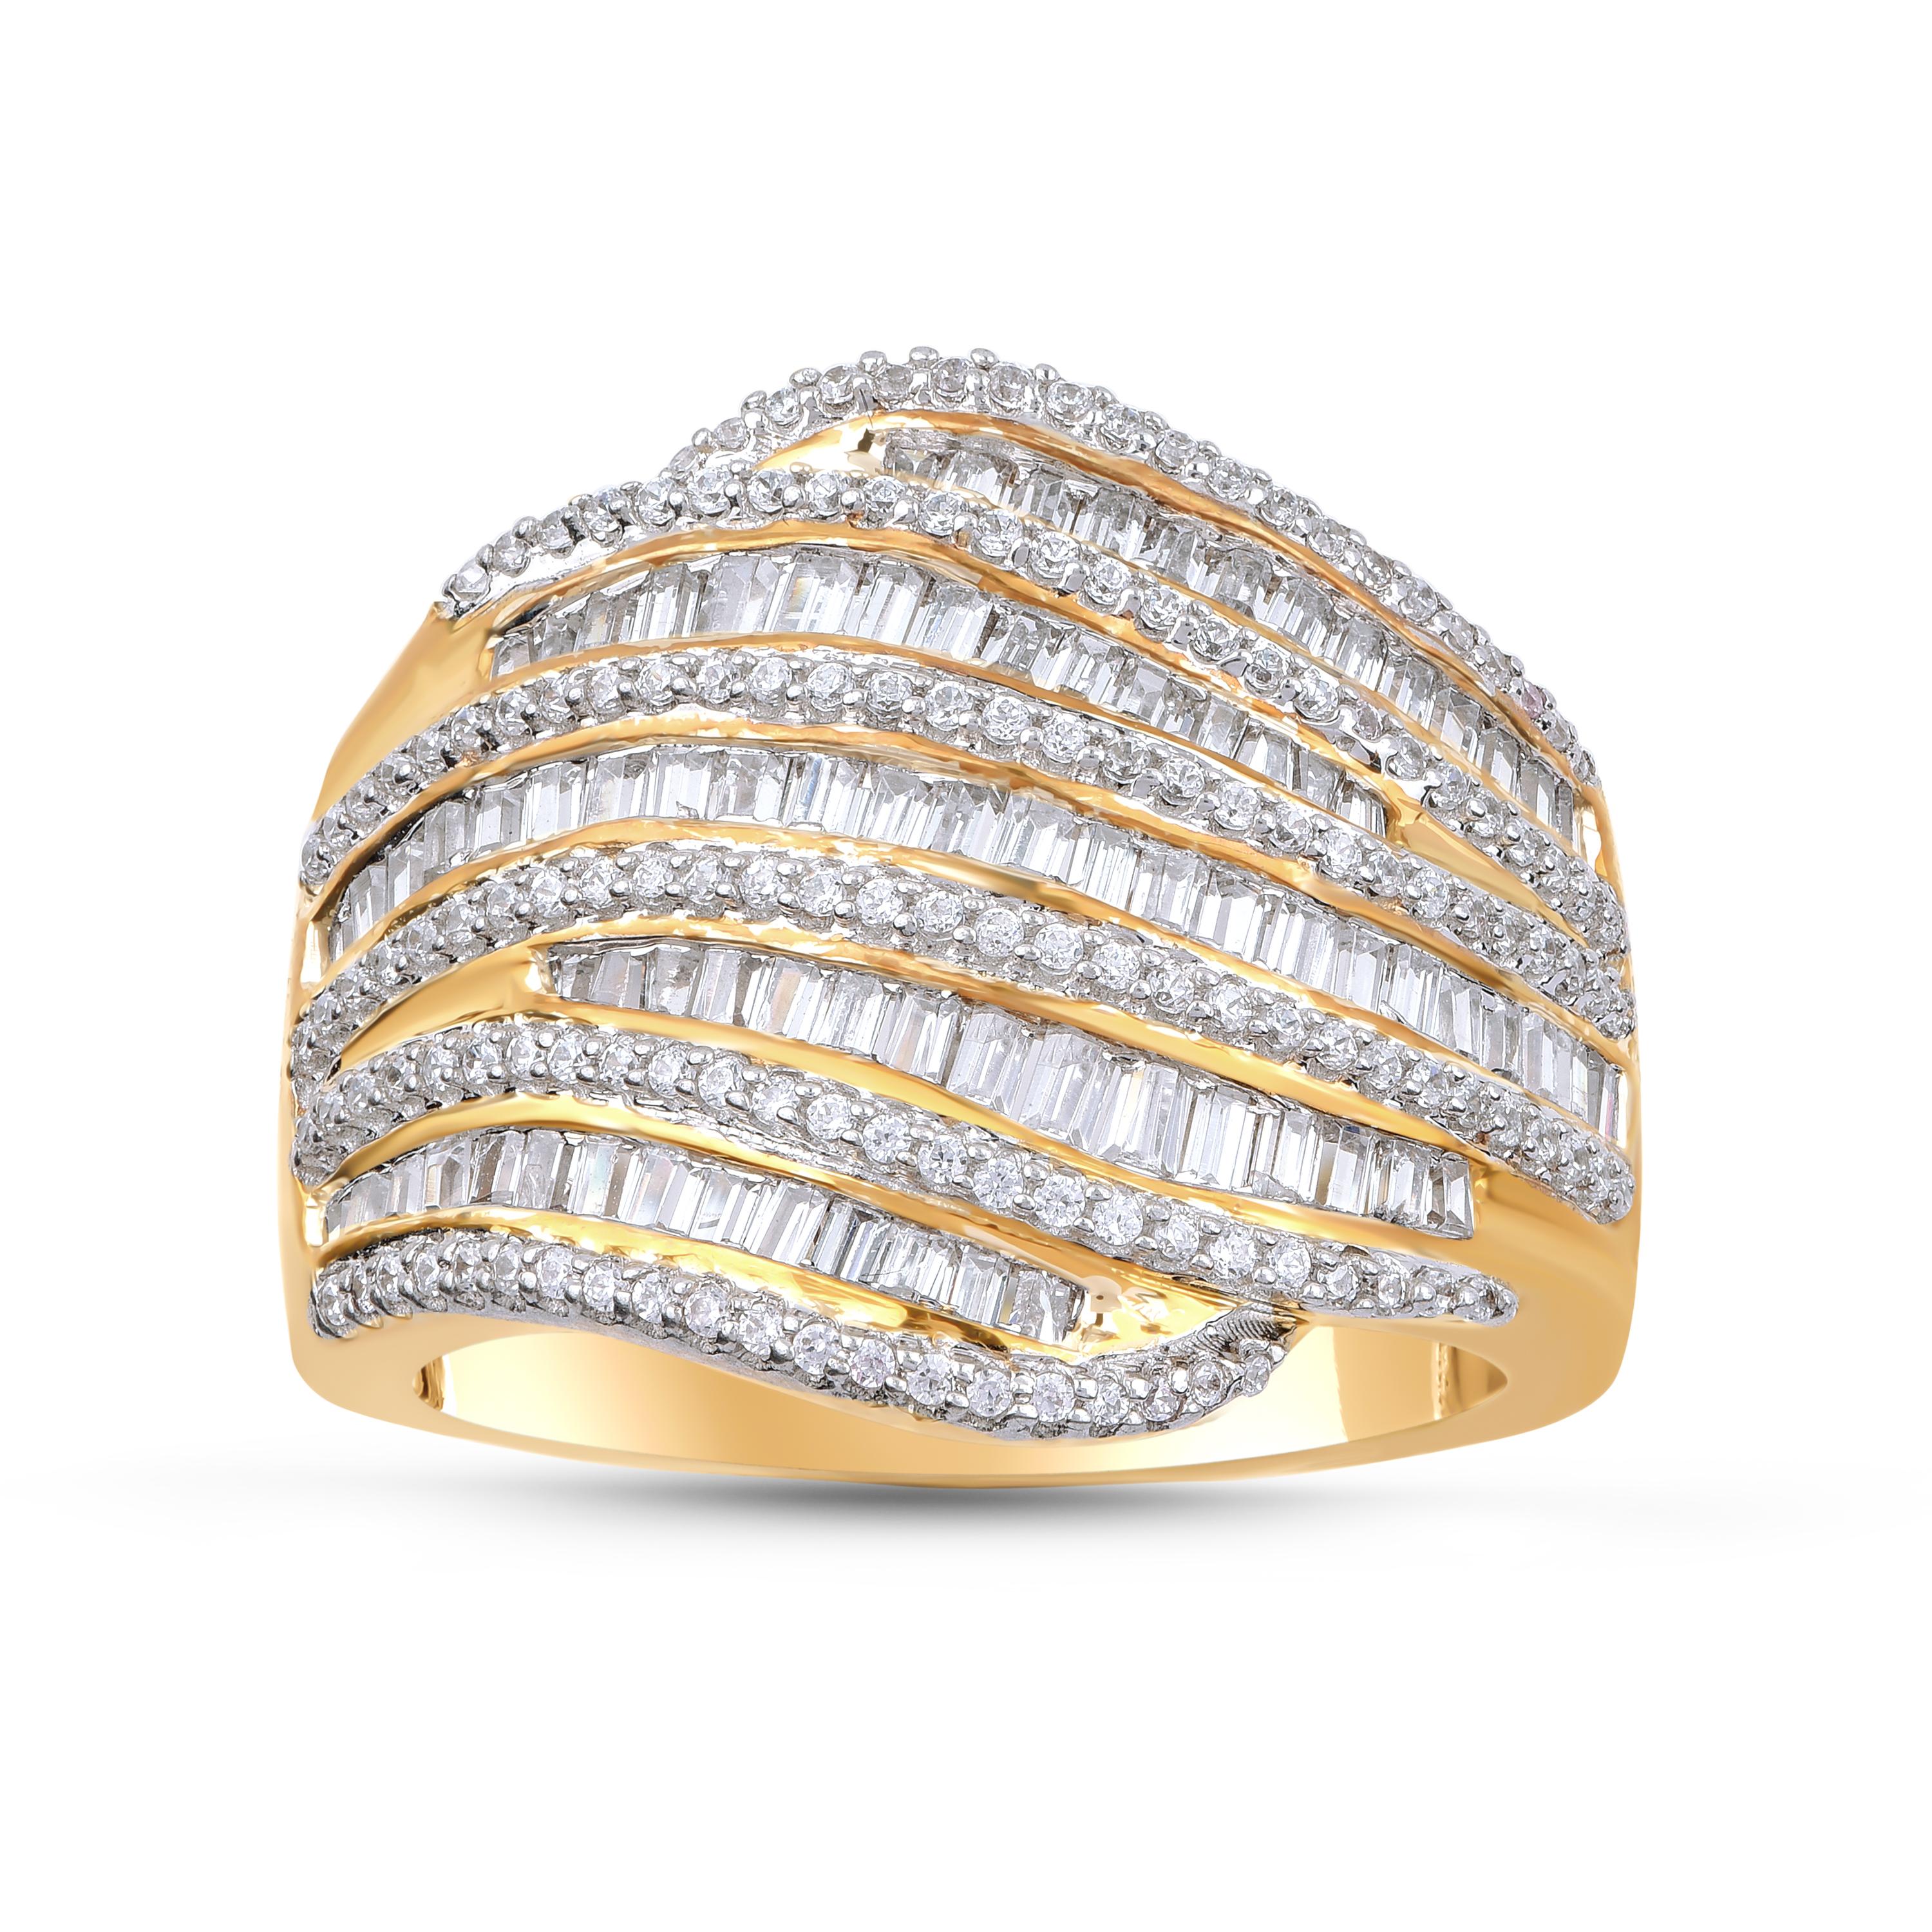 Elle comprend 150 diamants naturels de taille brillant et 97 diamants naturels de taille baguette, sertis en griffes et en canaux, et réalisée en or jaune 18 carats. Les diamants sont classés par couleur H-I et clarté I2.  

La couleur du métal et